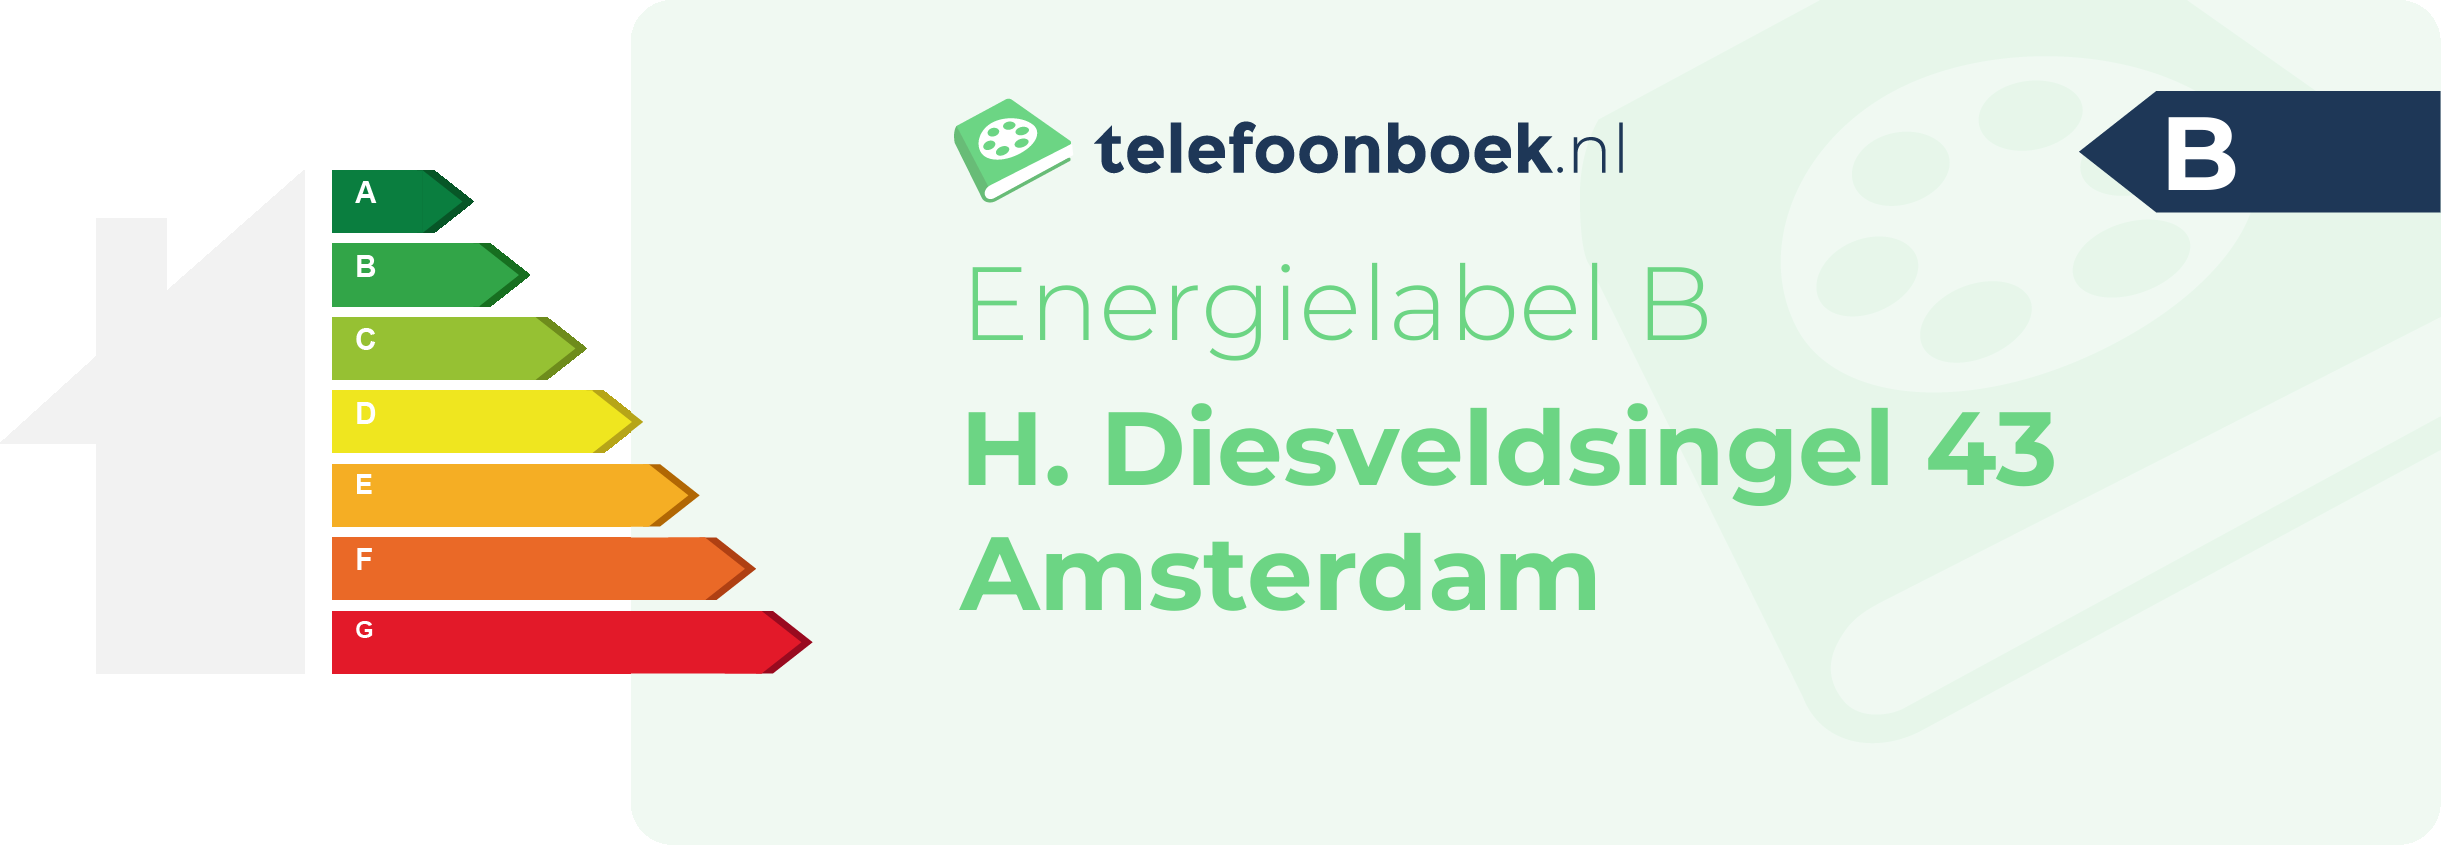 Energielabel H. Diesveldsingel 43 Amsterdam